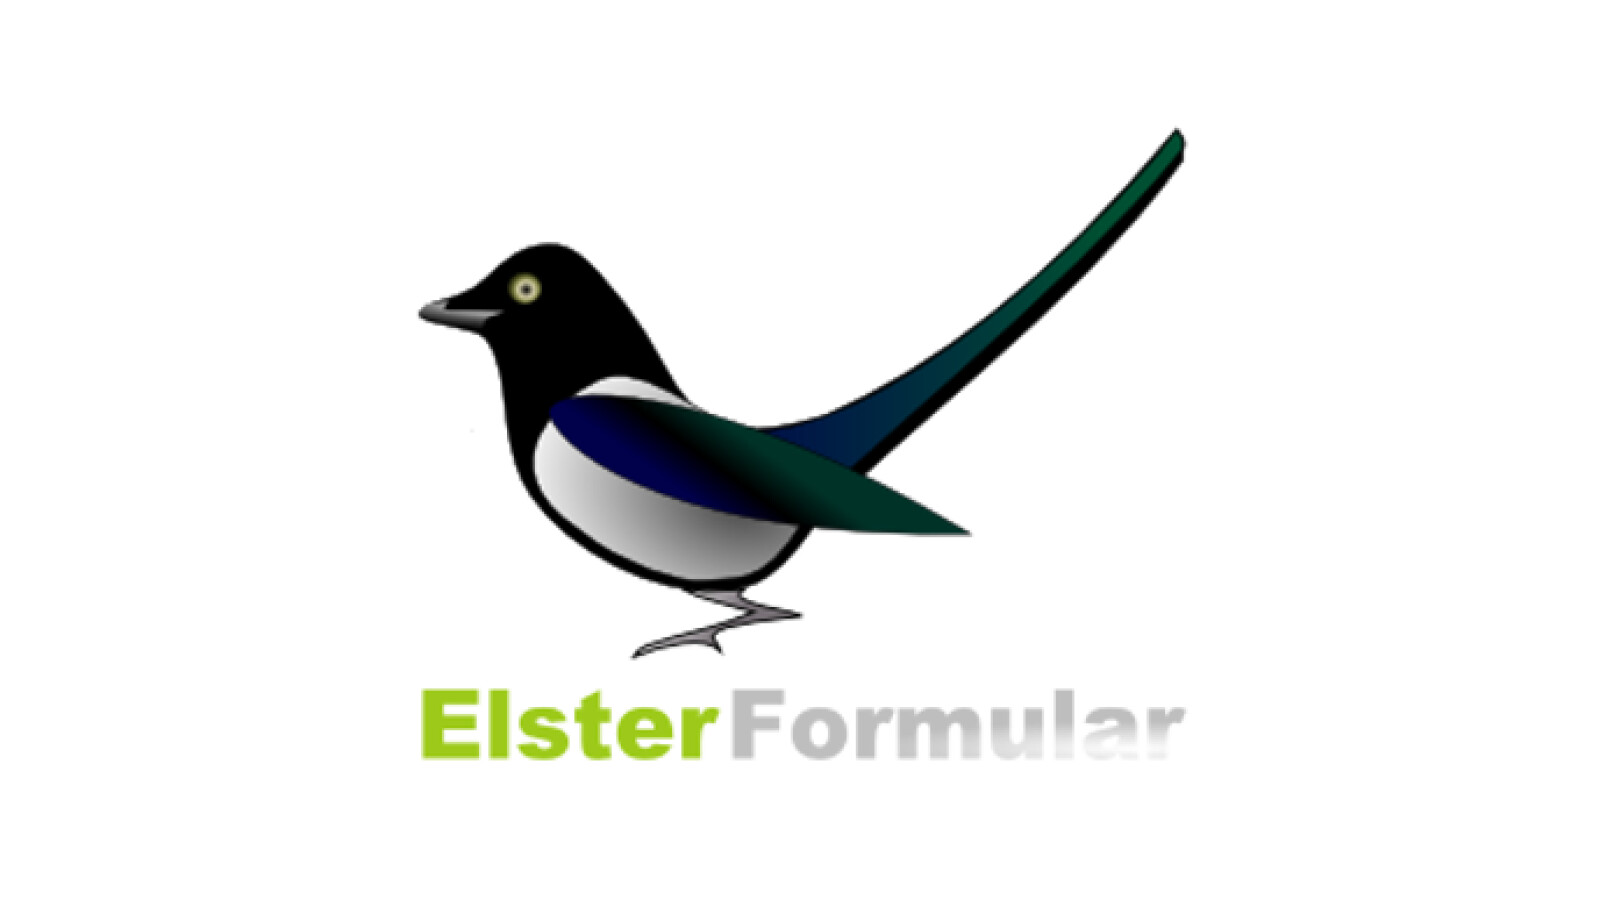 Gangguan di Elster: Saat ini, pengguna semakin berkutat dengan masalah